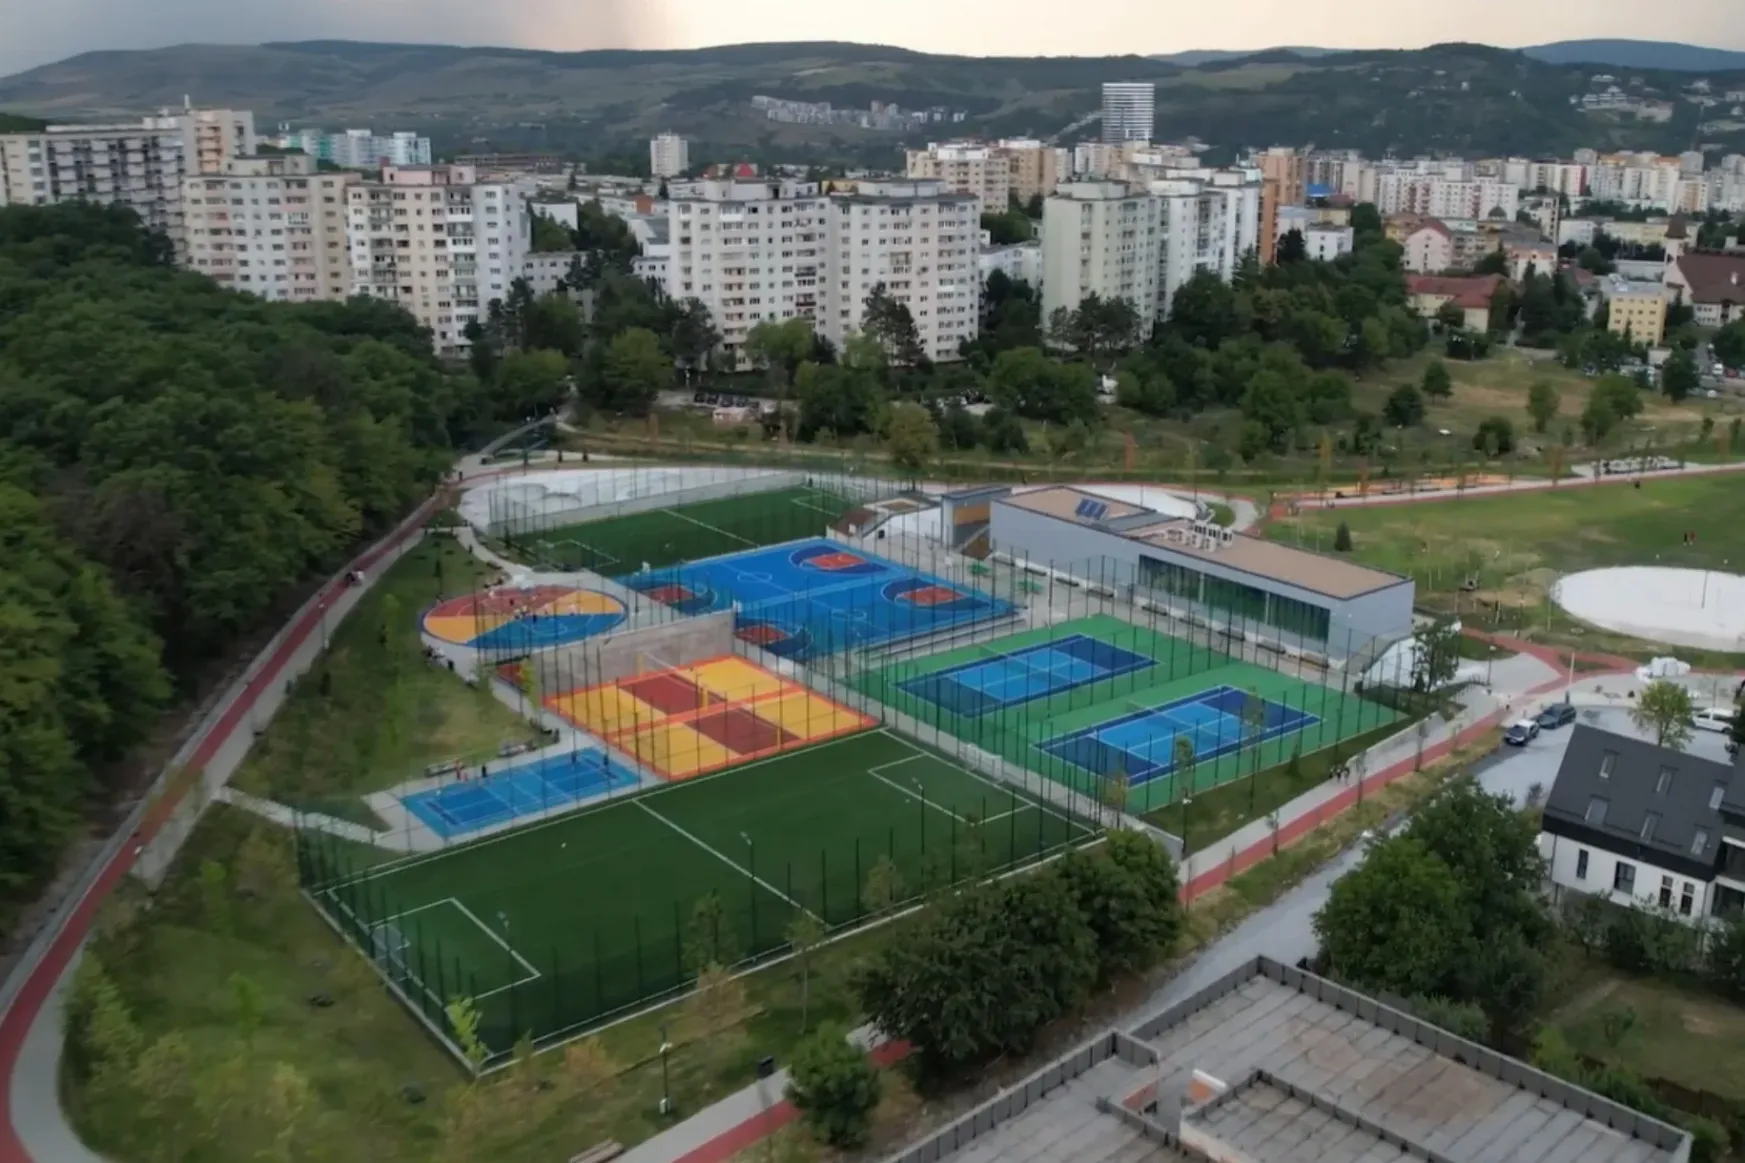 Sportpályák, játszóterek és zöldterület – négy hektáros parkot adott át Kolozsvár önkormányzata